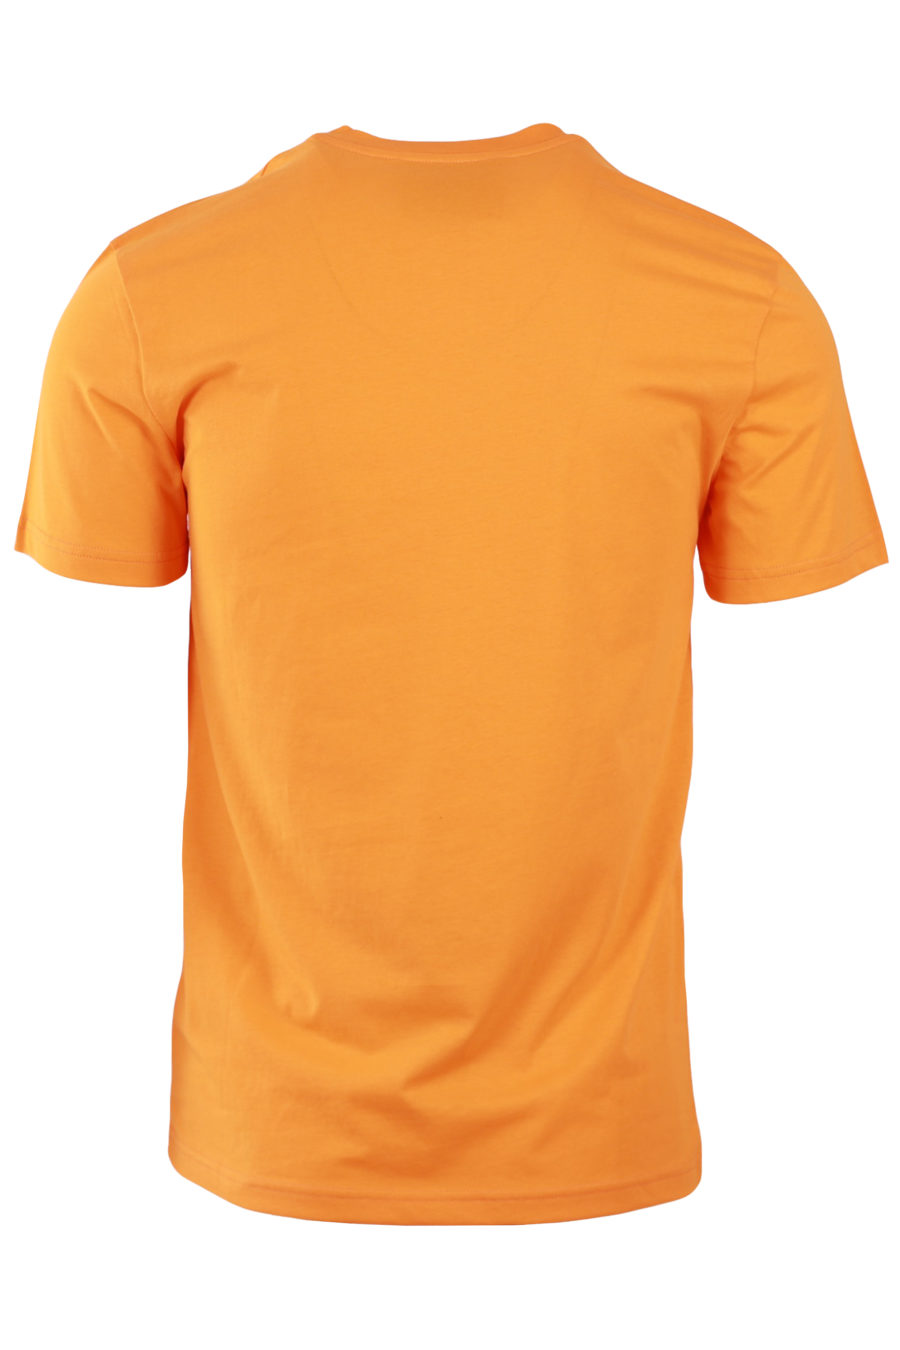 T-shirt laranja com dupla questão de logótipo - 14777291dd33c66642cdd34b46a012b67a0bcfb2